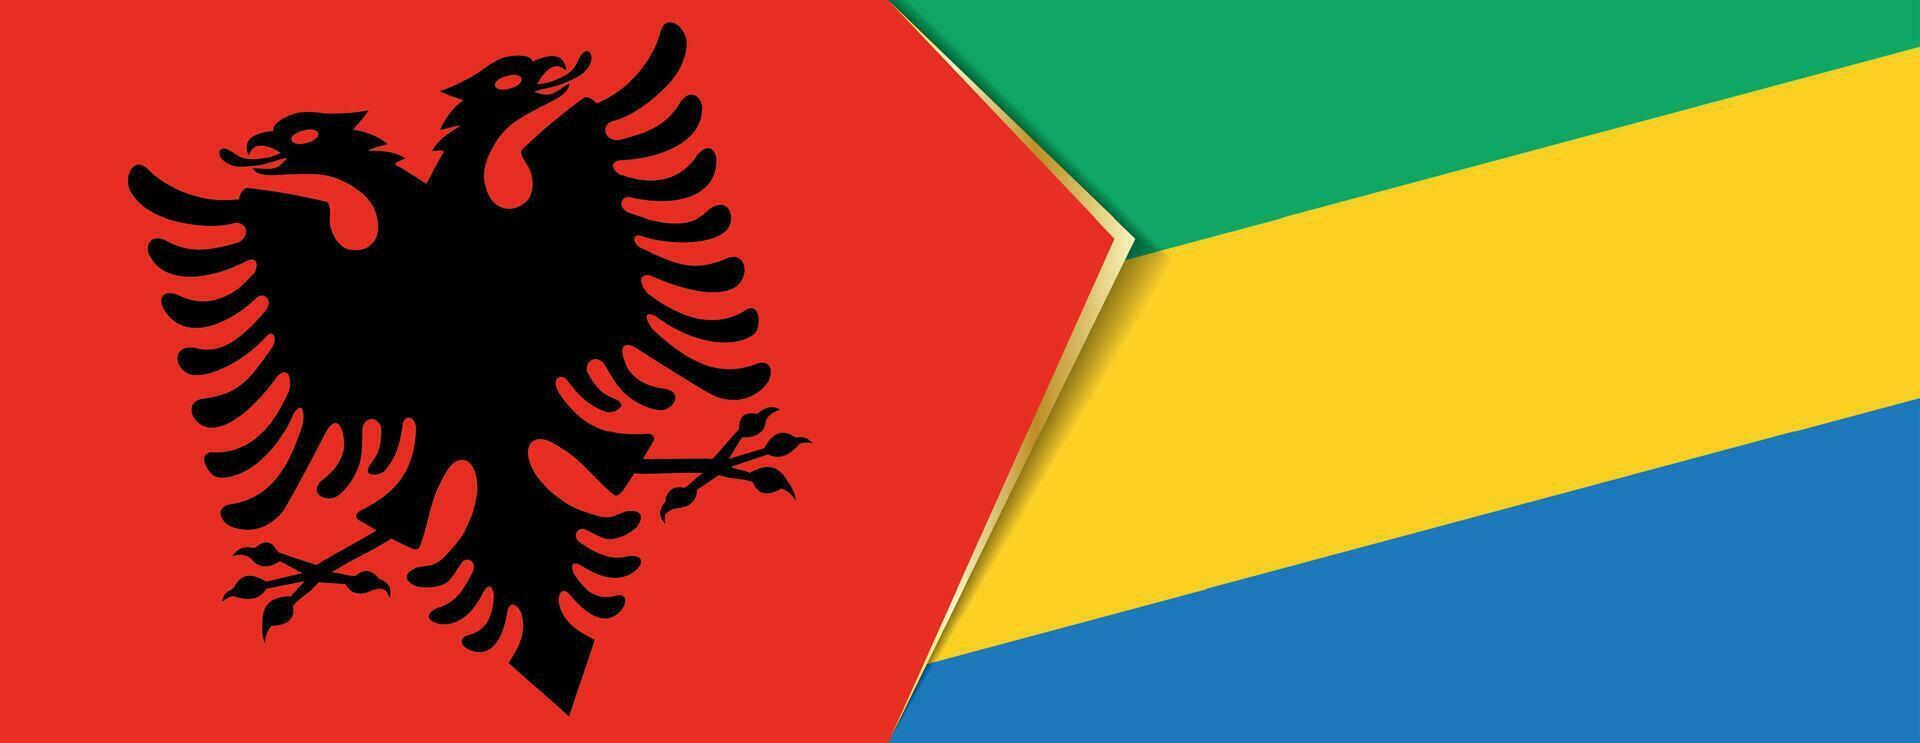 Albania y Gabón banderas, dos vector banderas